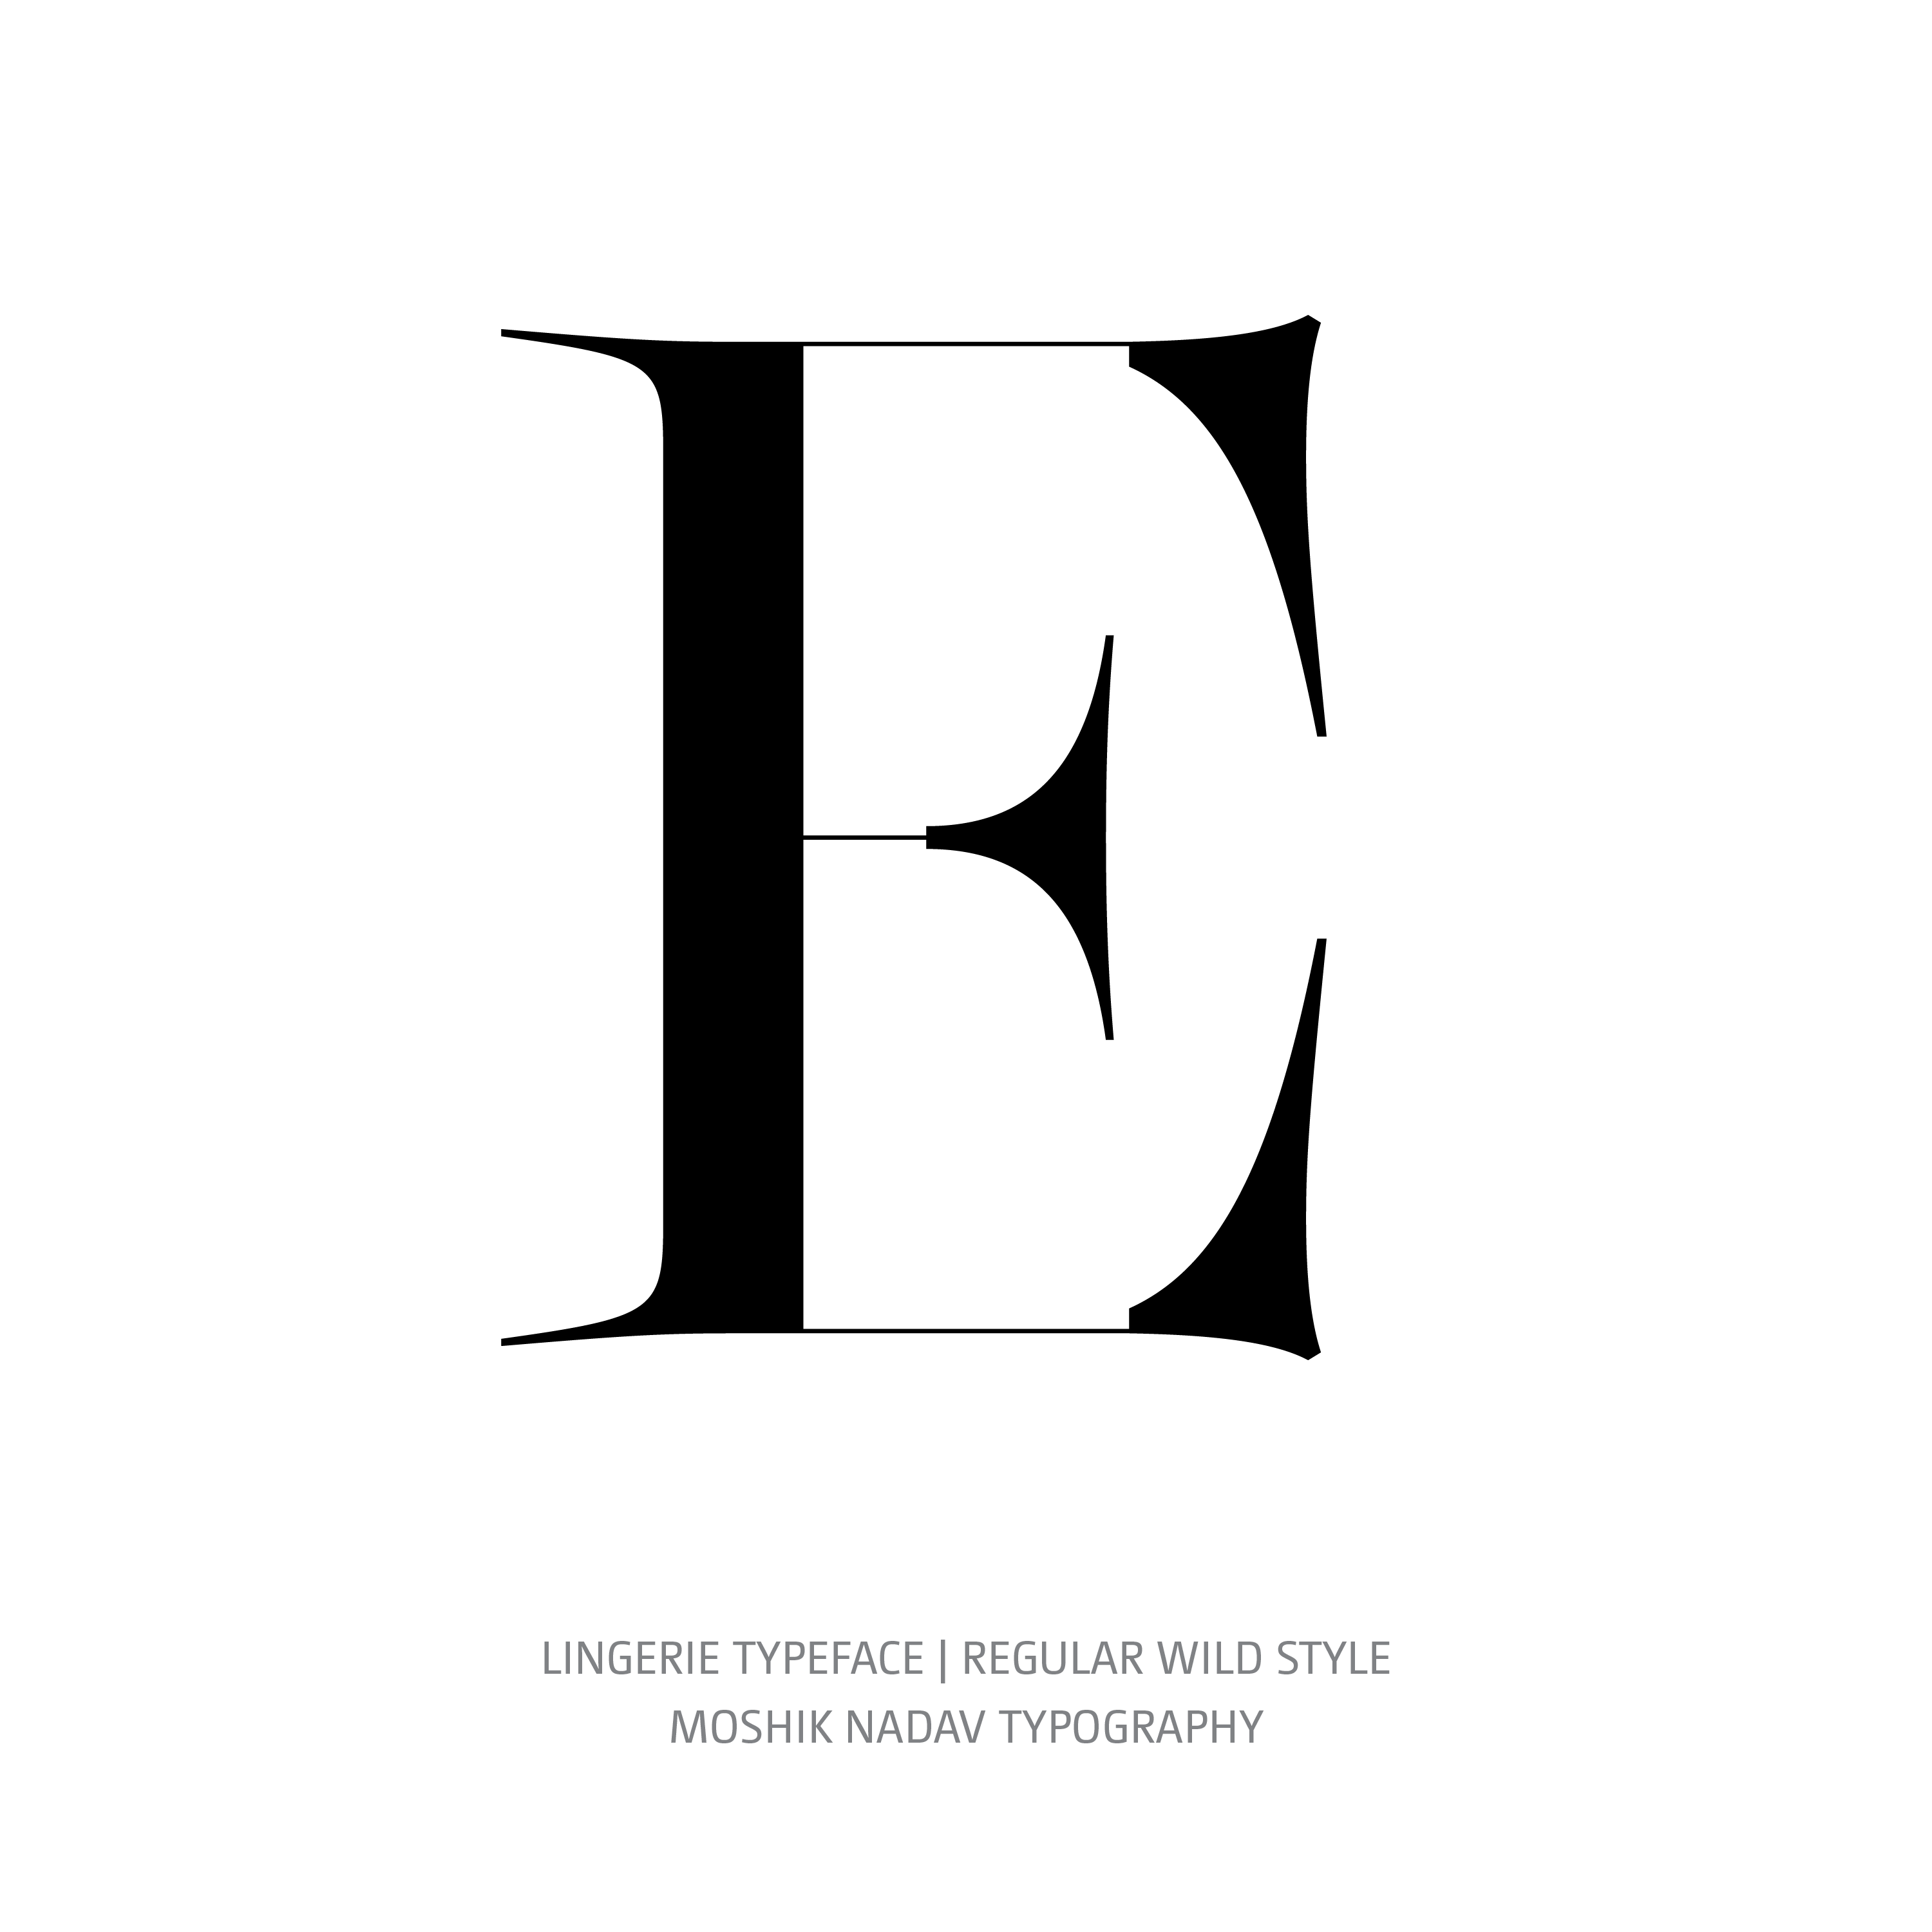 Lingerie Typeface Regular Wild E